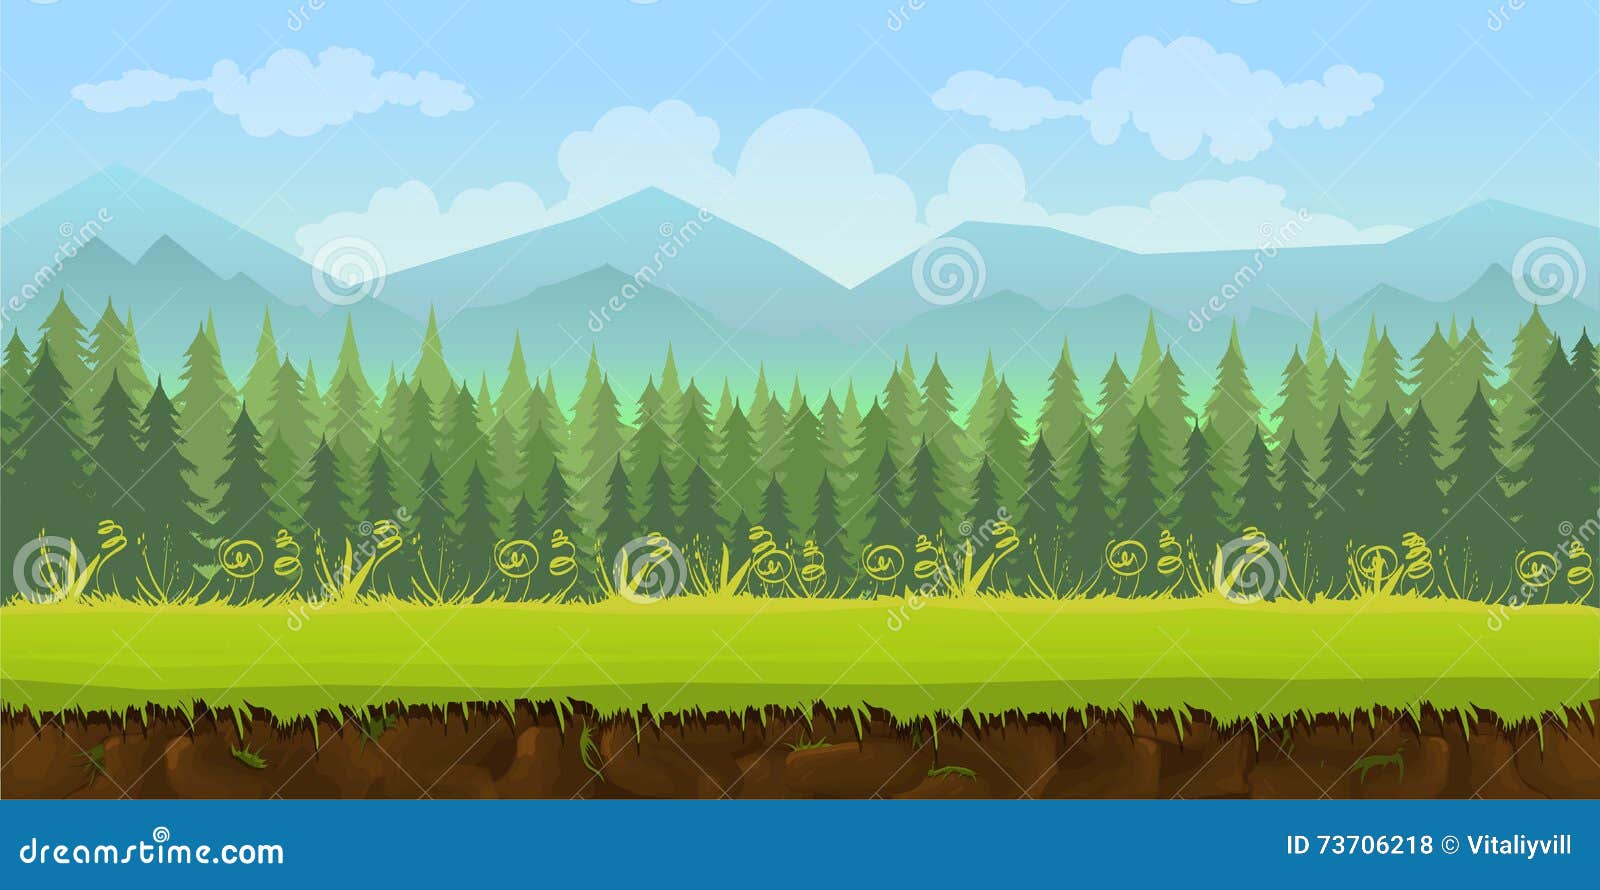 Hình nền cho ứng dụng trò chơi rừng 2D sẽ đưa bạn vào một cuộc phiêu lưu đầy thú vị trong rừng xanh. Vui chơi và khám phá những bí mật ẩn giấu trong khu rừng này. Hãy bật khởi động và thưởng thức trò chơi yêu thích của bạn tại nền tảng này!